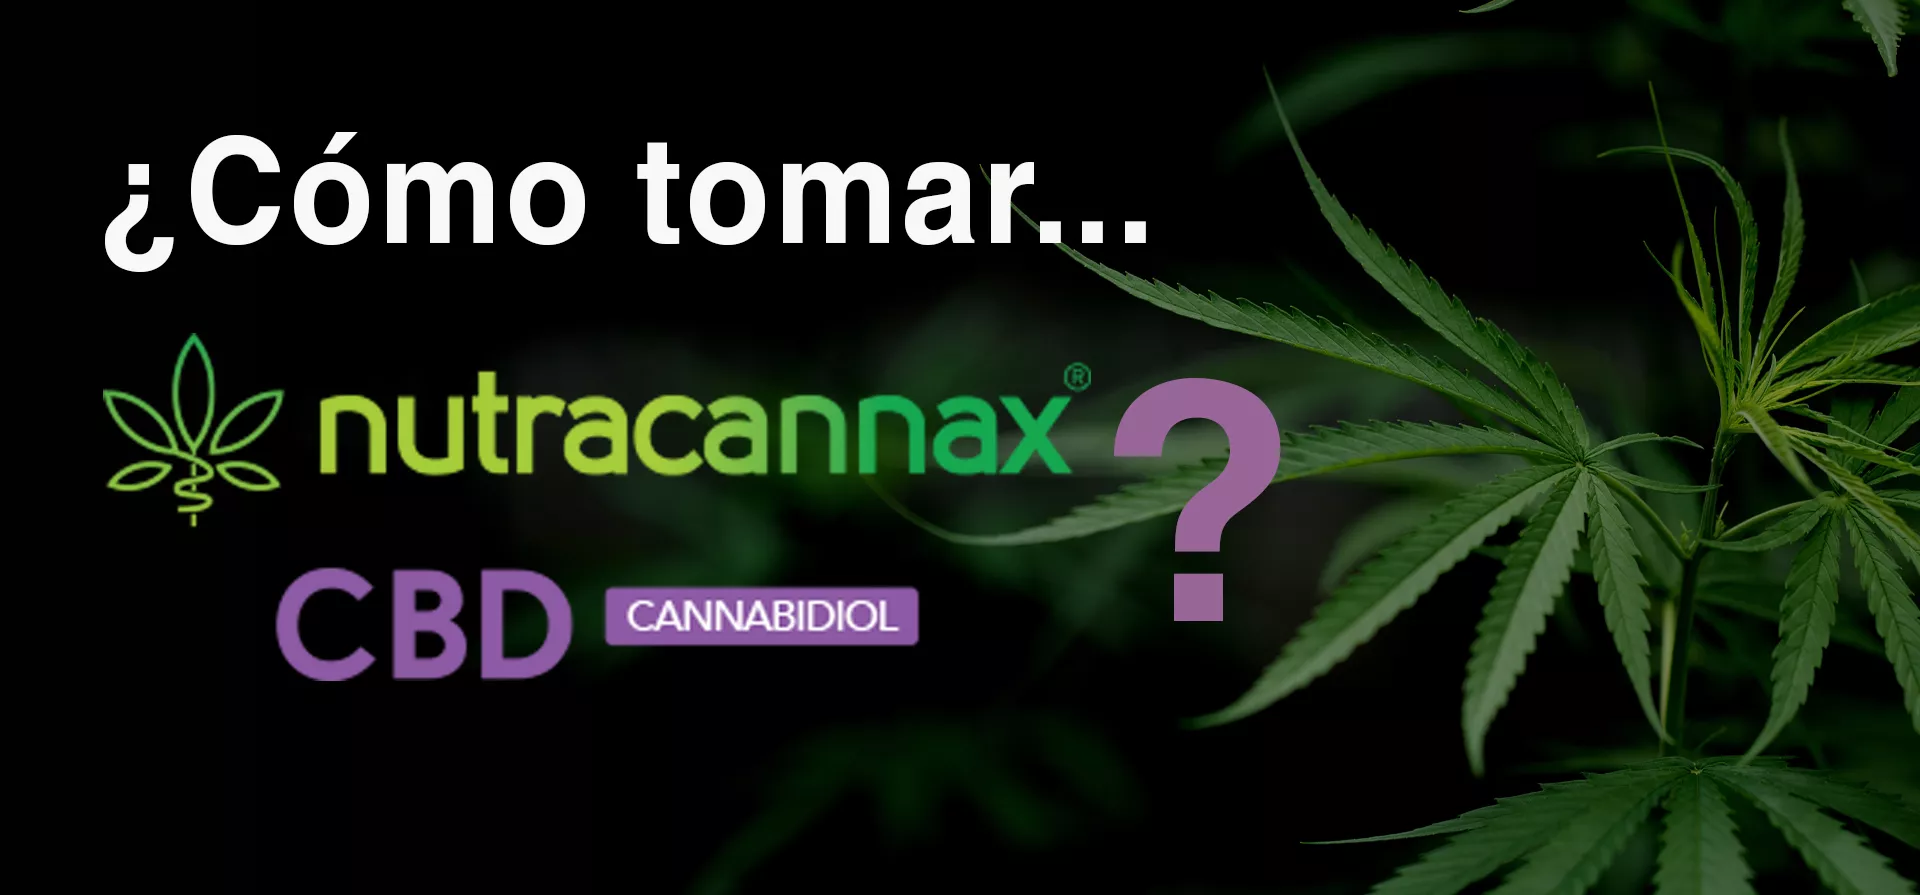 ¿Cómo tomar Nutracannax, existe una dosis de CBD?